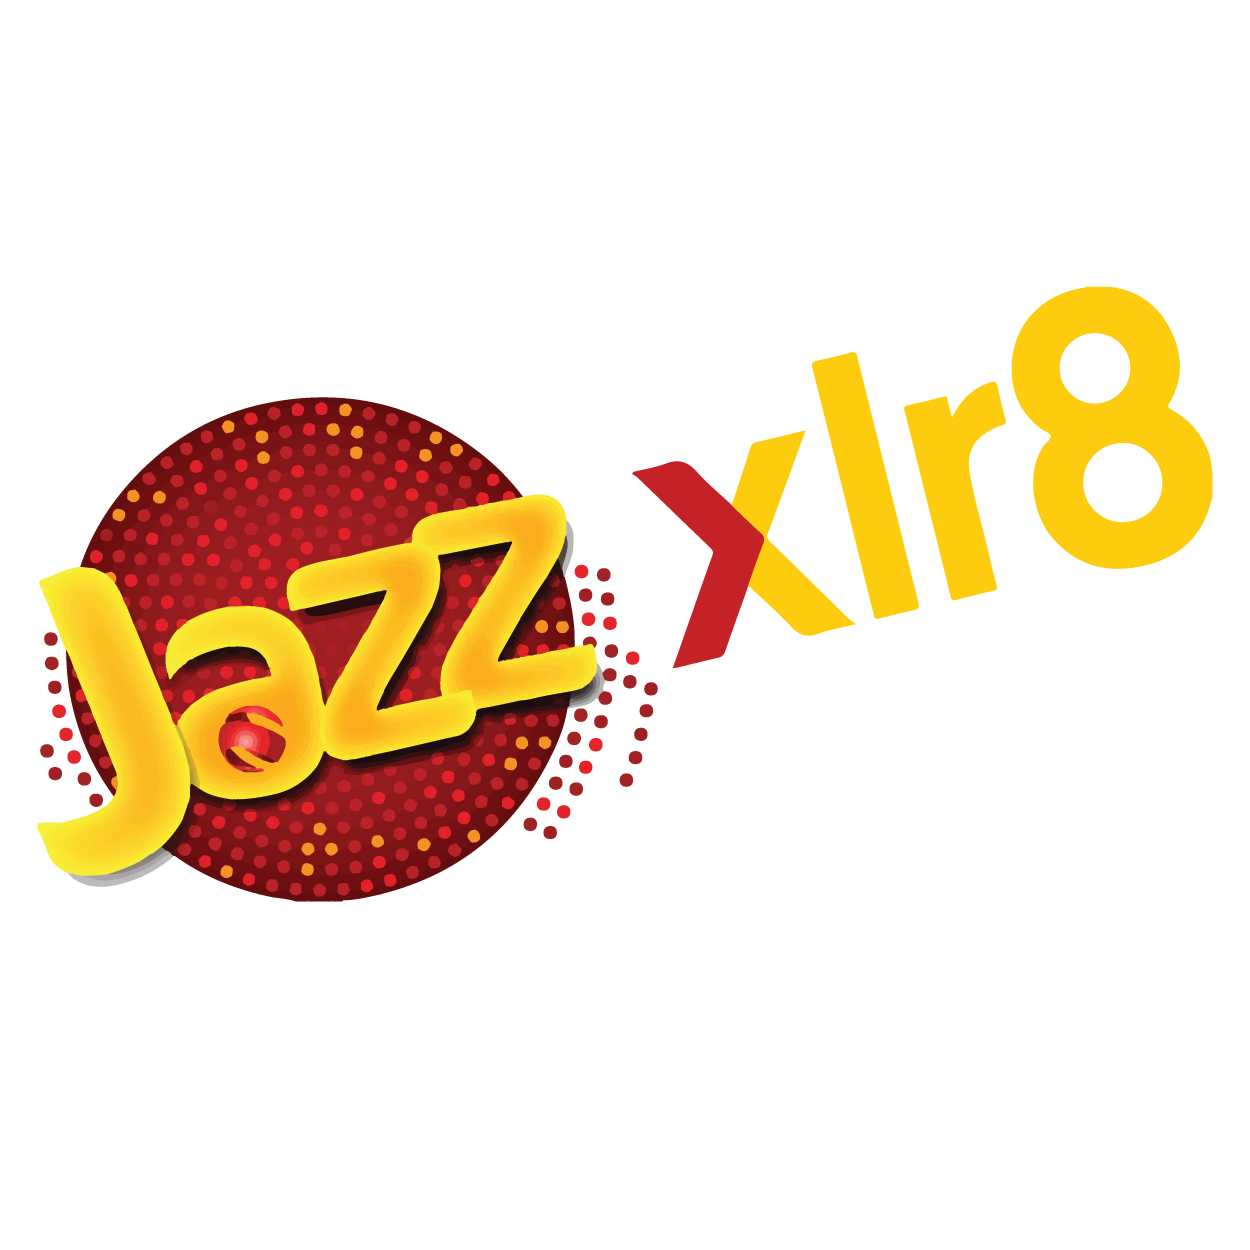 JAZZ xlr8 logo